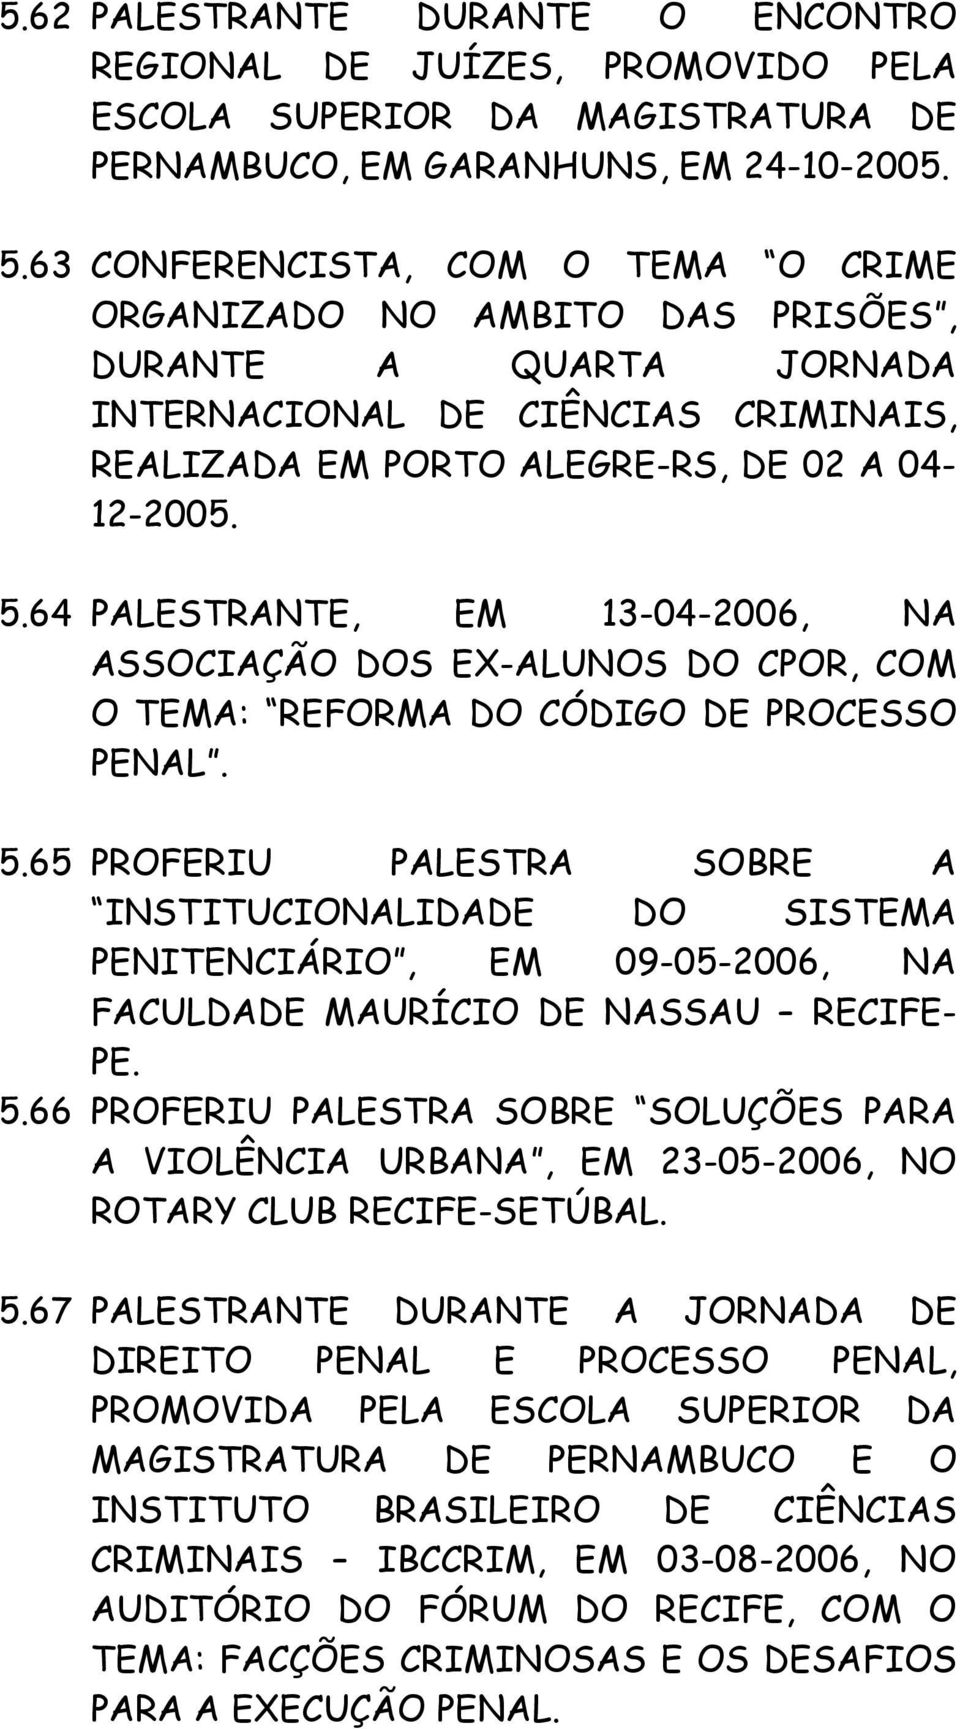 64 PALESTRANTE, EM 13-04-2006, NA ASSOCIAÇÃO DOS EX-ALUNOS DO CPOR, COM O TEMA: REFORMA DO CÓDIGO DE PROCESSO PENAL. 5.